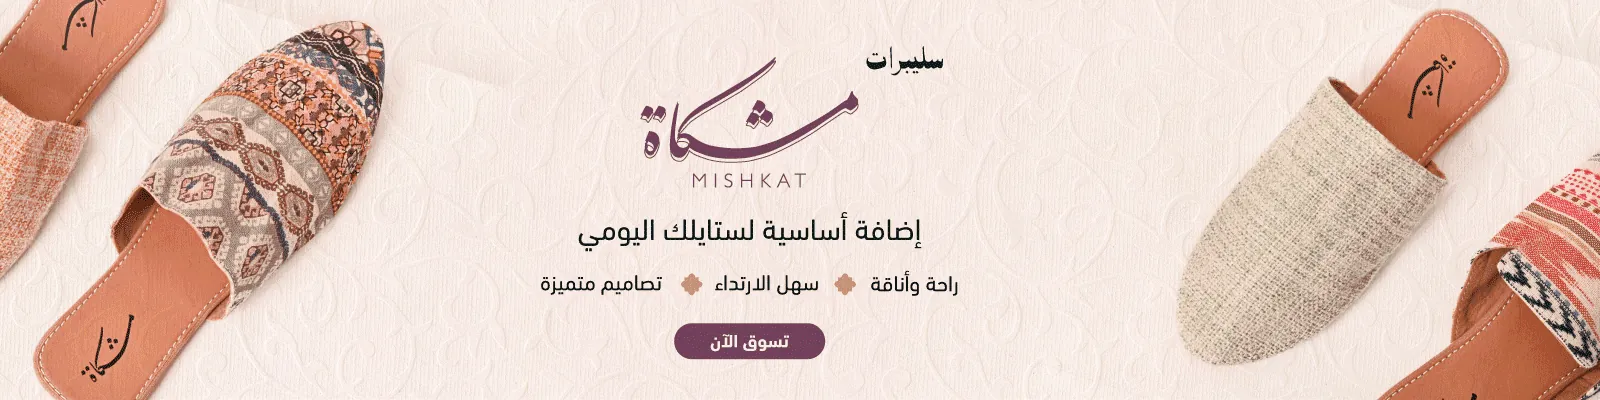 Ramadan Mishkat slippers webnew-media